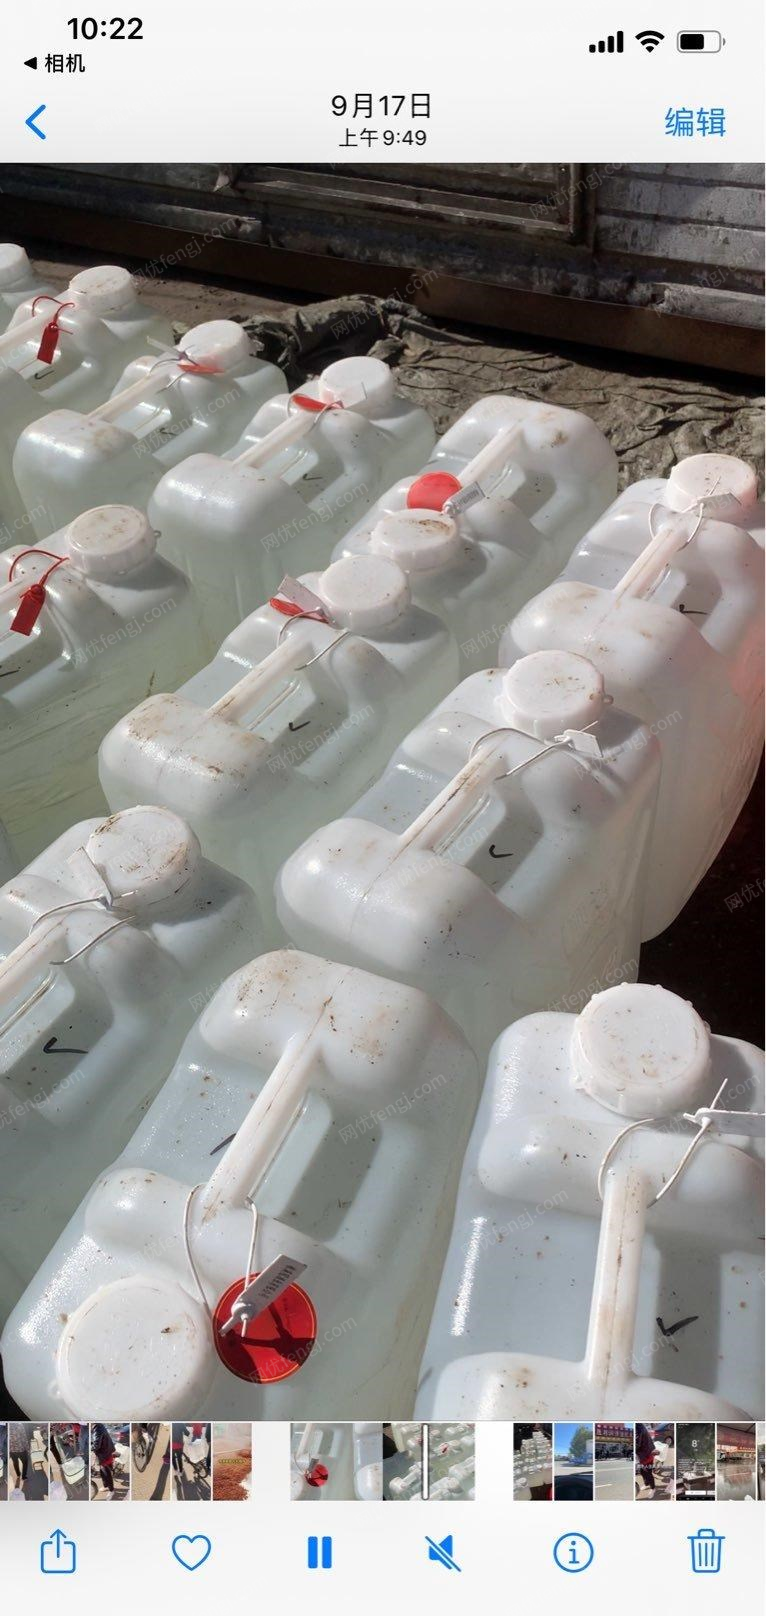 黑龙江绥化出售50斤塑料桶 只装过一次酒 约100个左右,看货议价.后面还有.